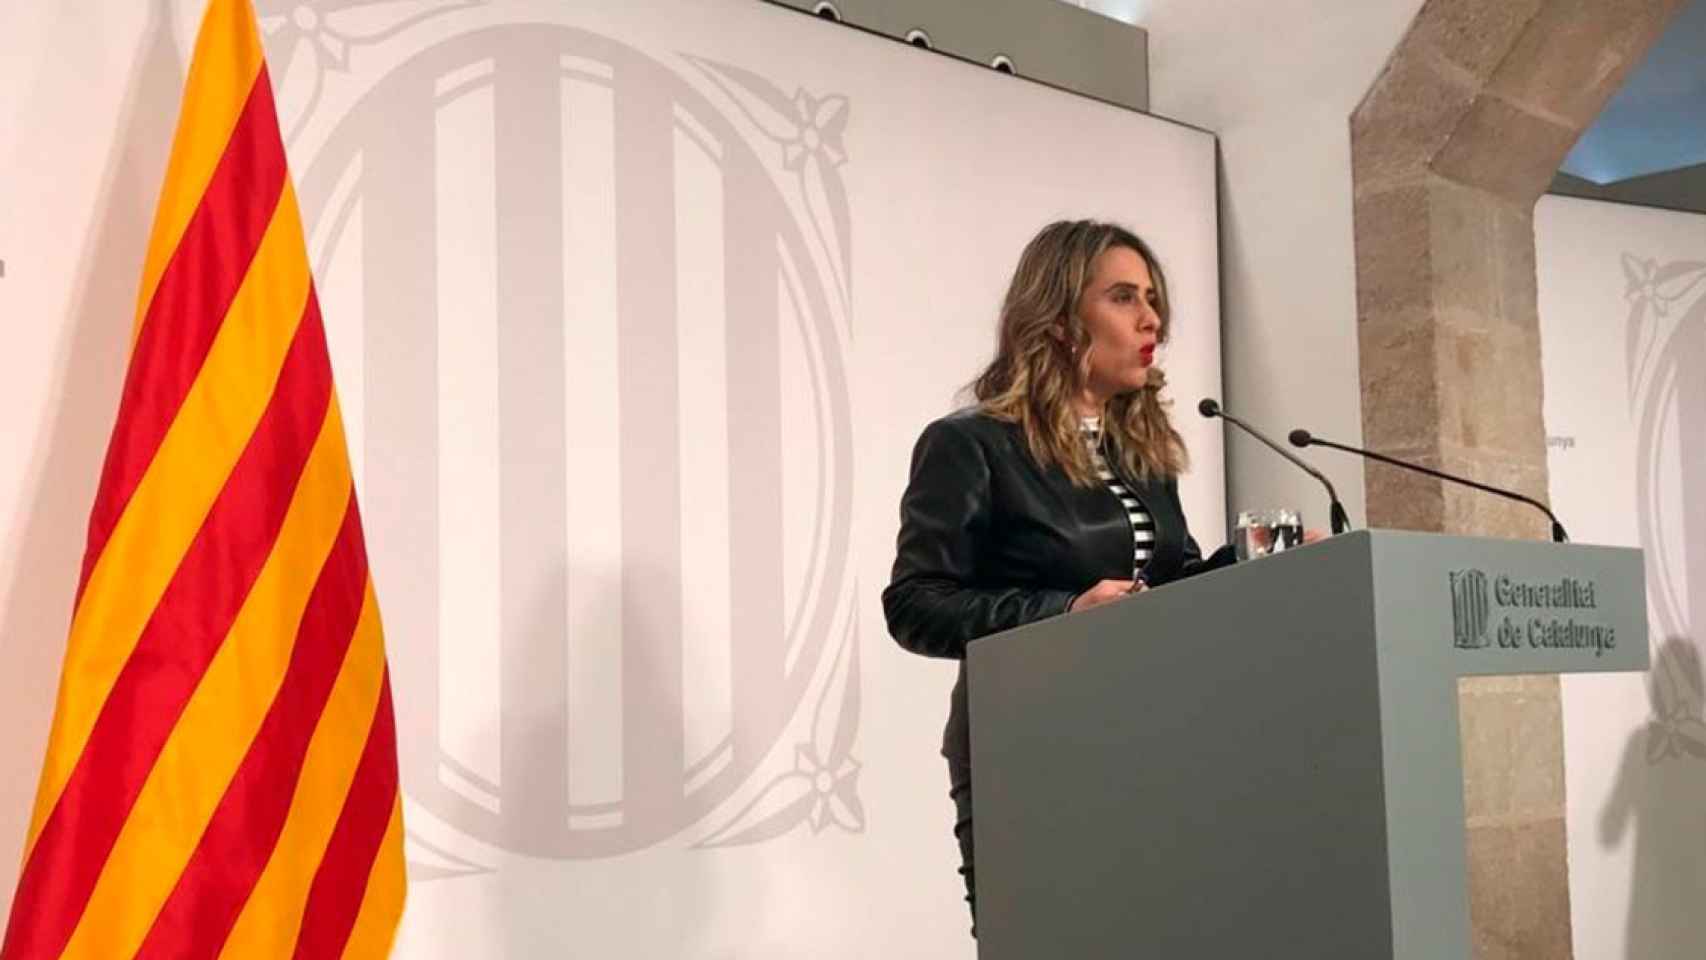 La portavoz del Govern de la Generalitat, Patrícia Plaja, en la rueda de prensa celebrada tras el Consell Executiu de este martes, en la que ha afirmado que la negociación sigue viva respecto a la huelga de médicos / EUROPA PRESS